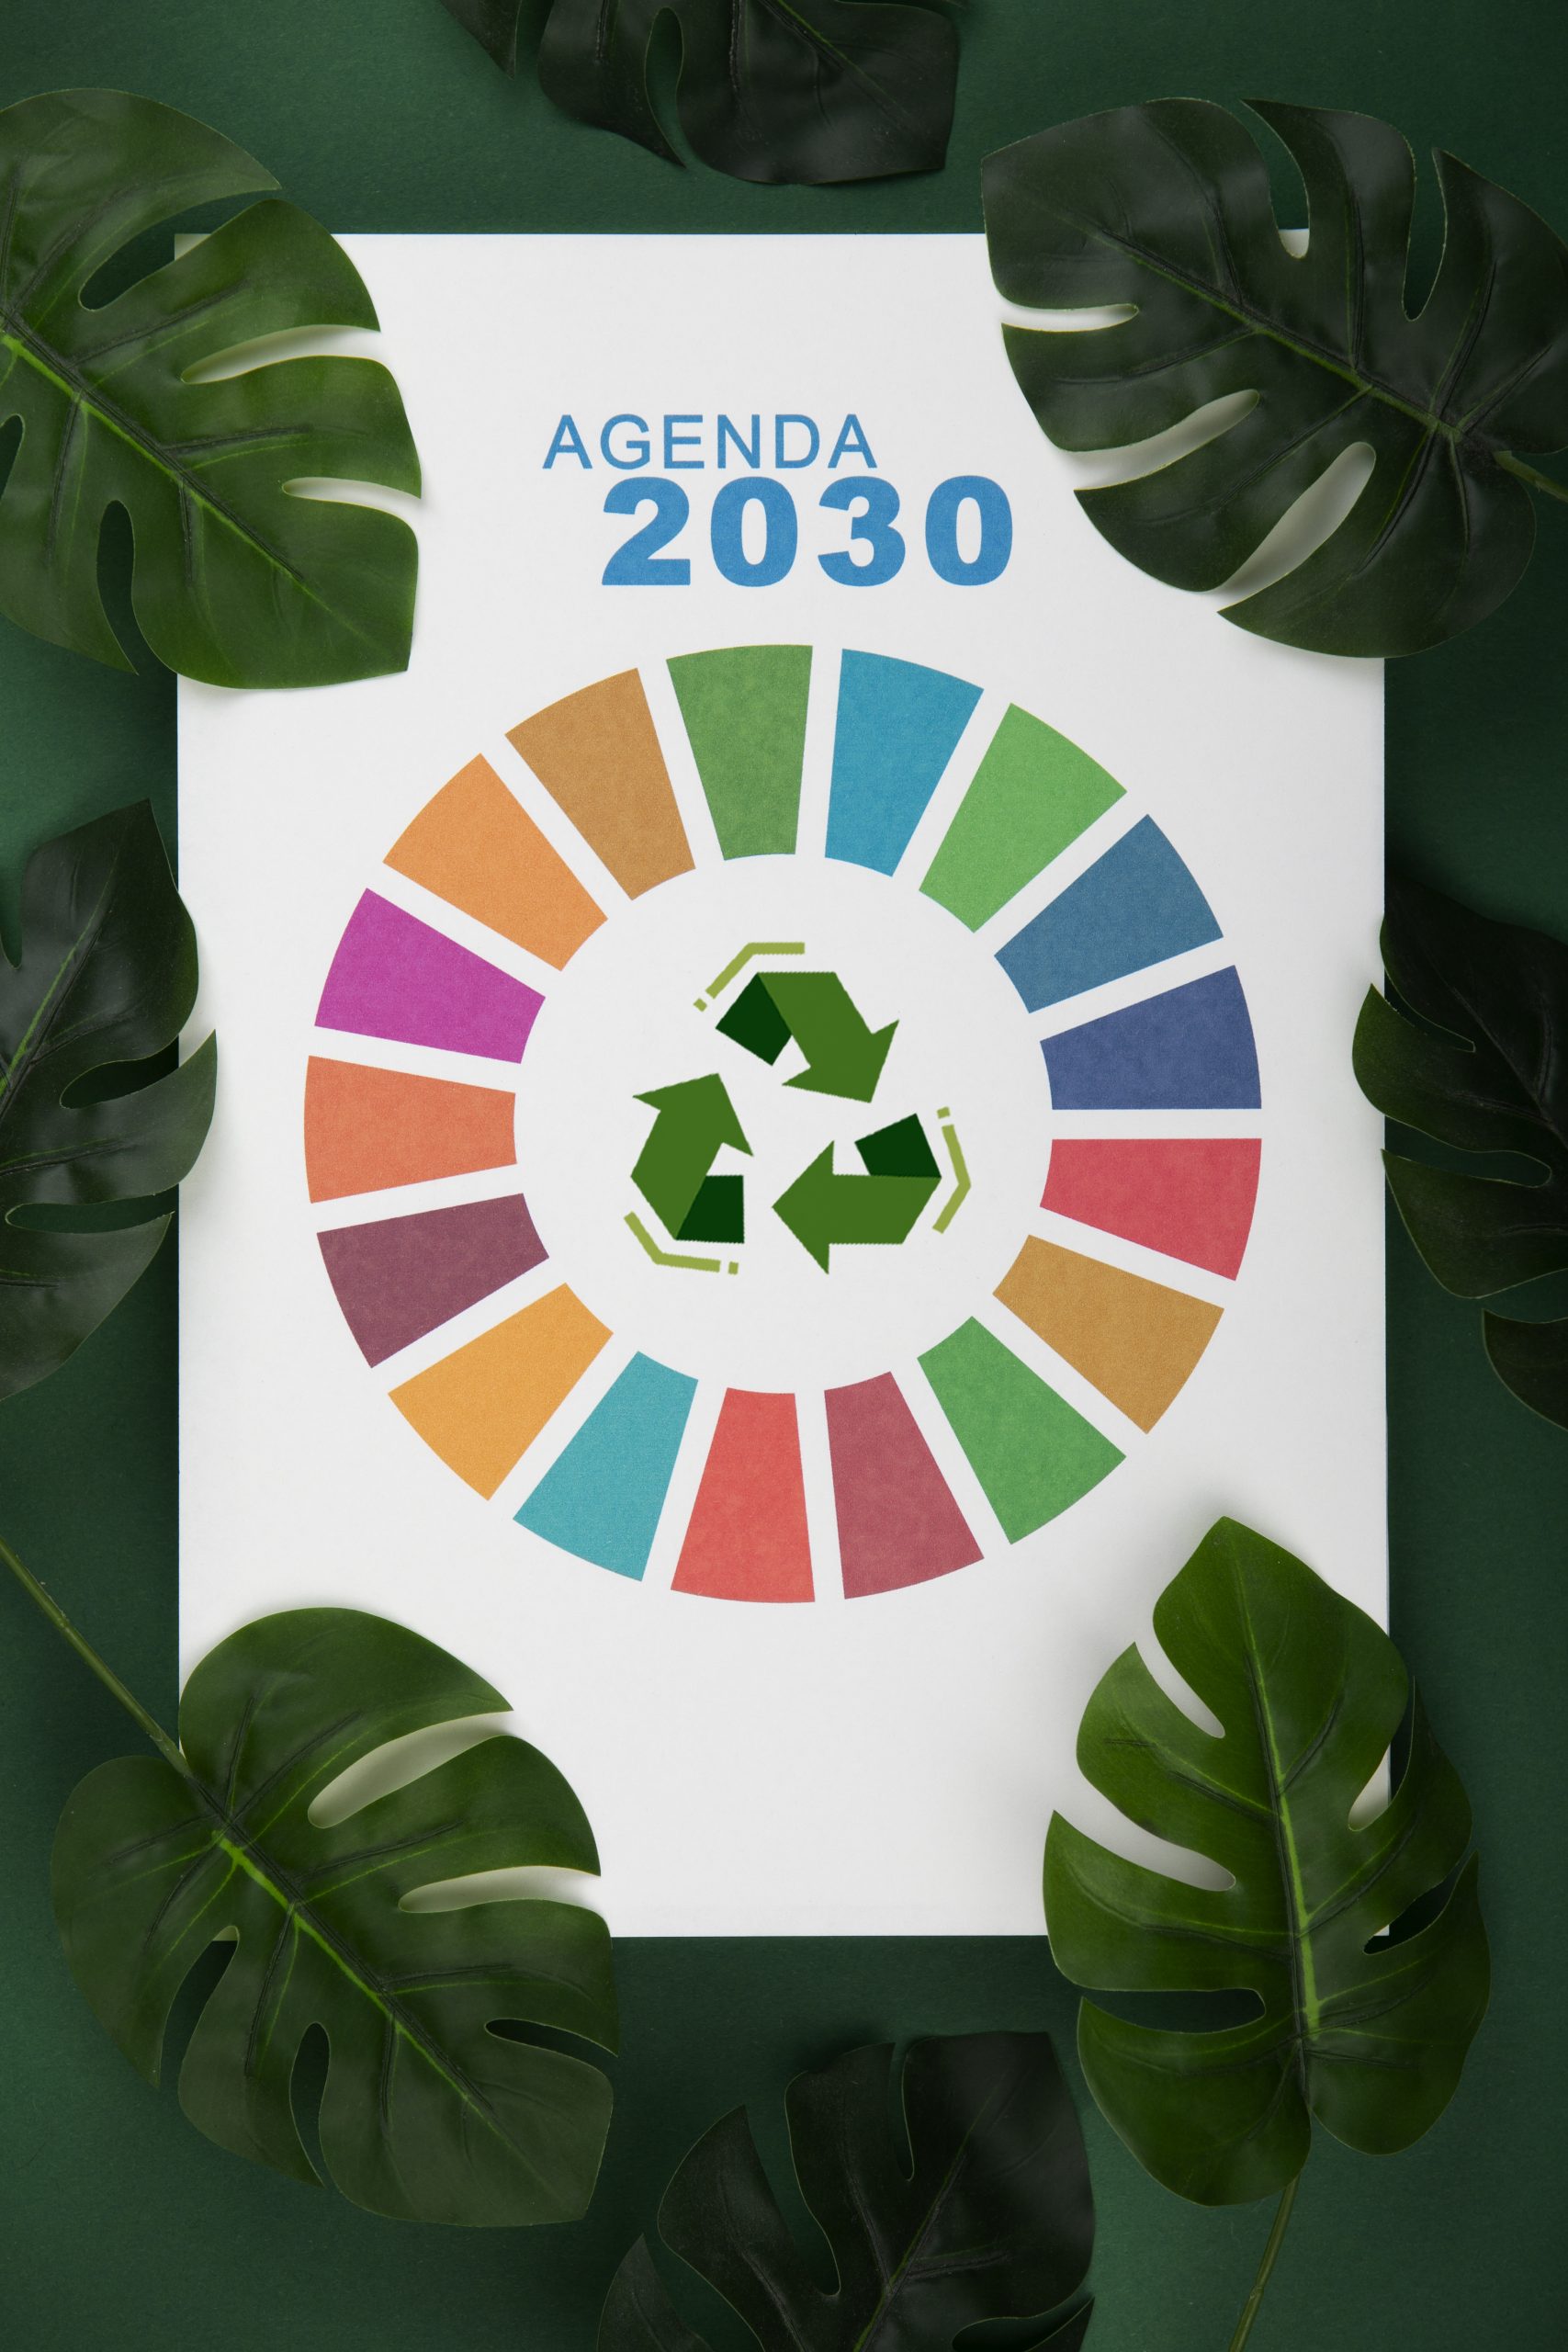 cuáles son los 17 objetivos de la agenda 2030